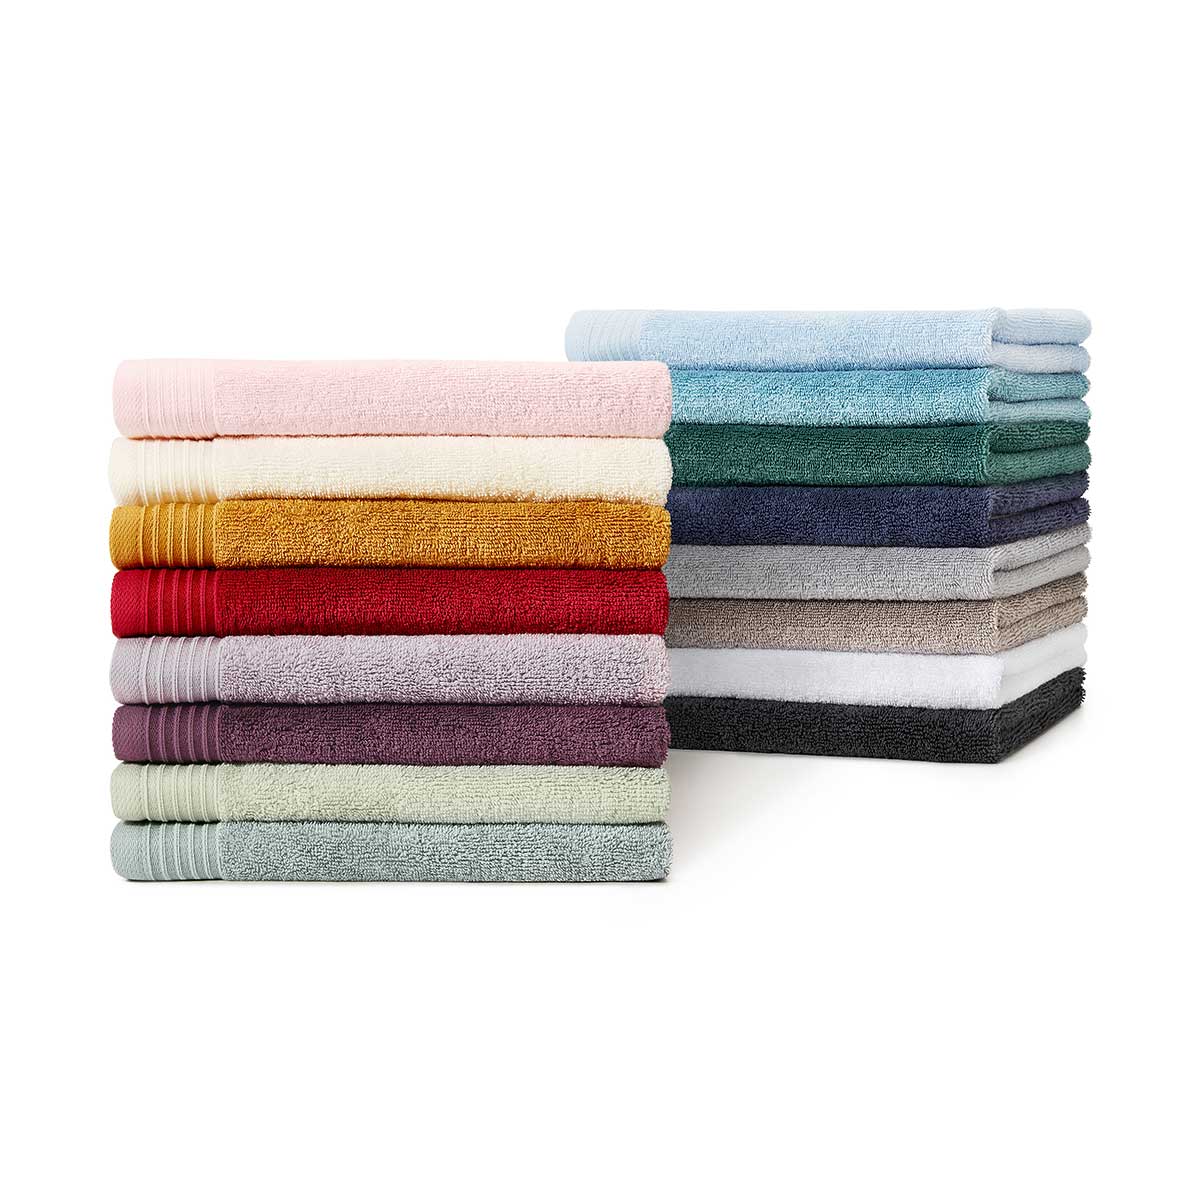 Campionari di asciugamani